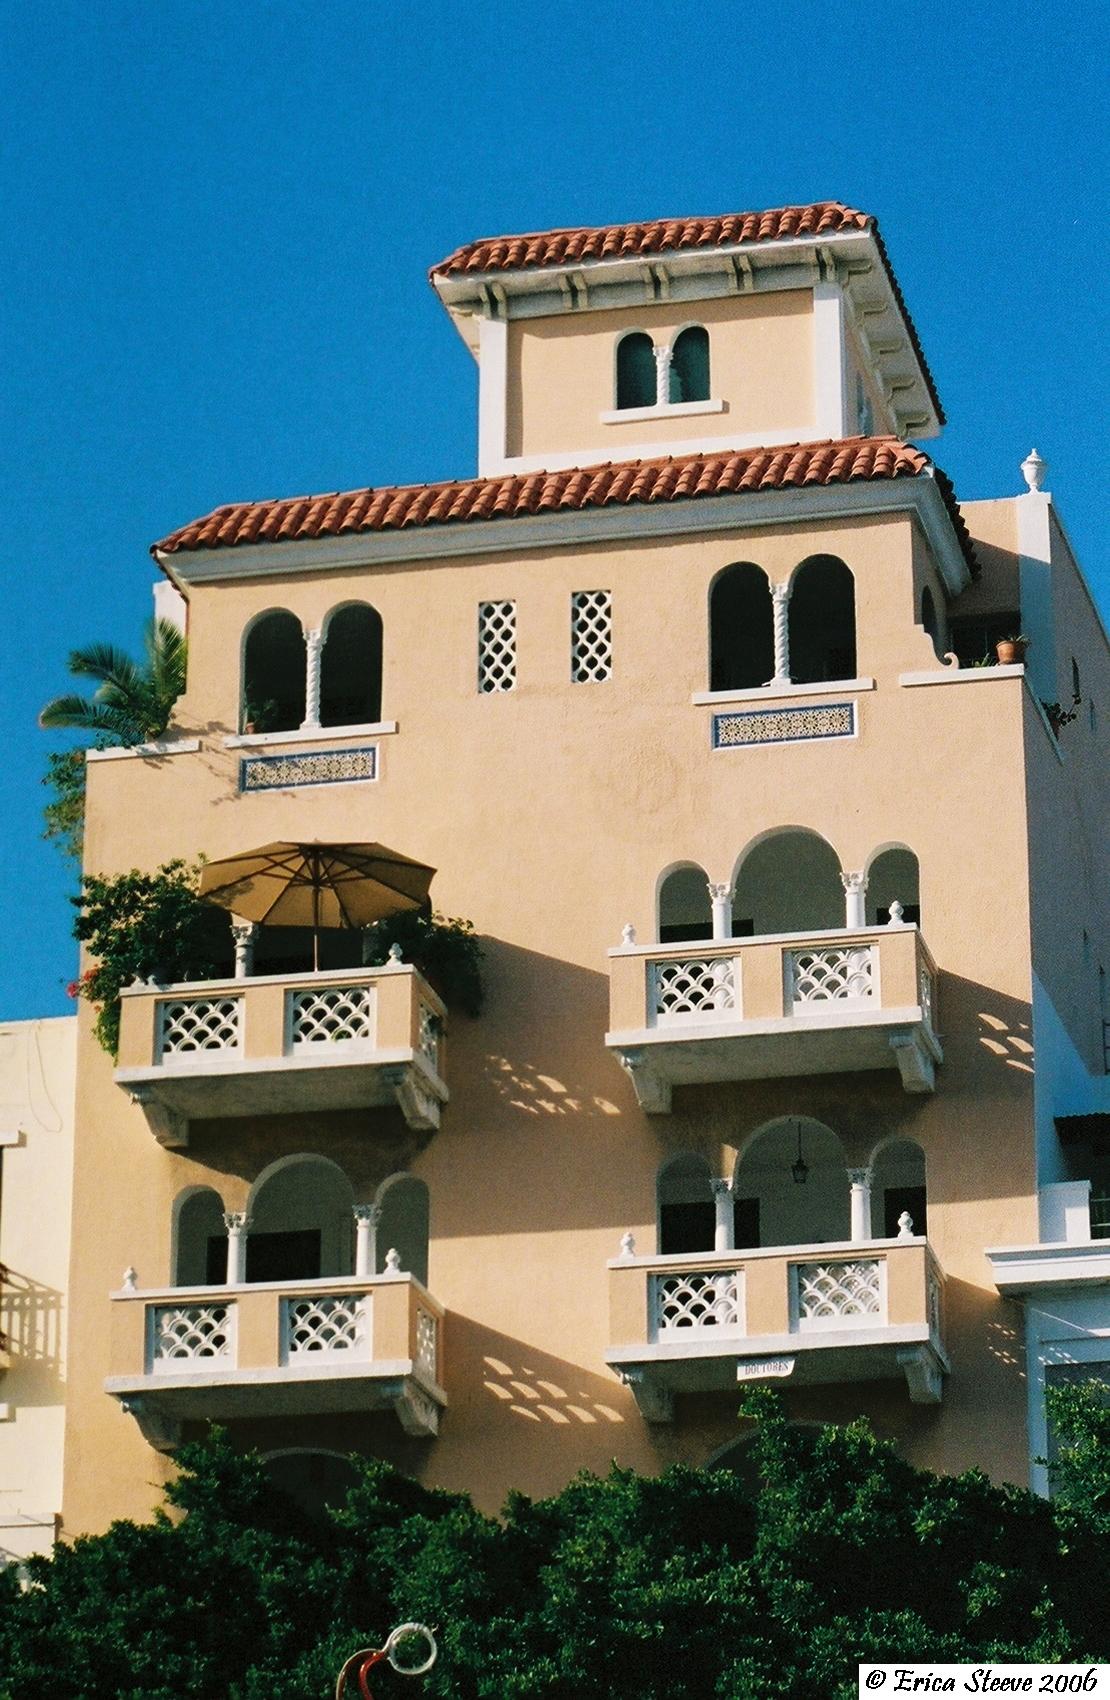 A Puerto Rico hotel